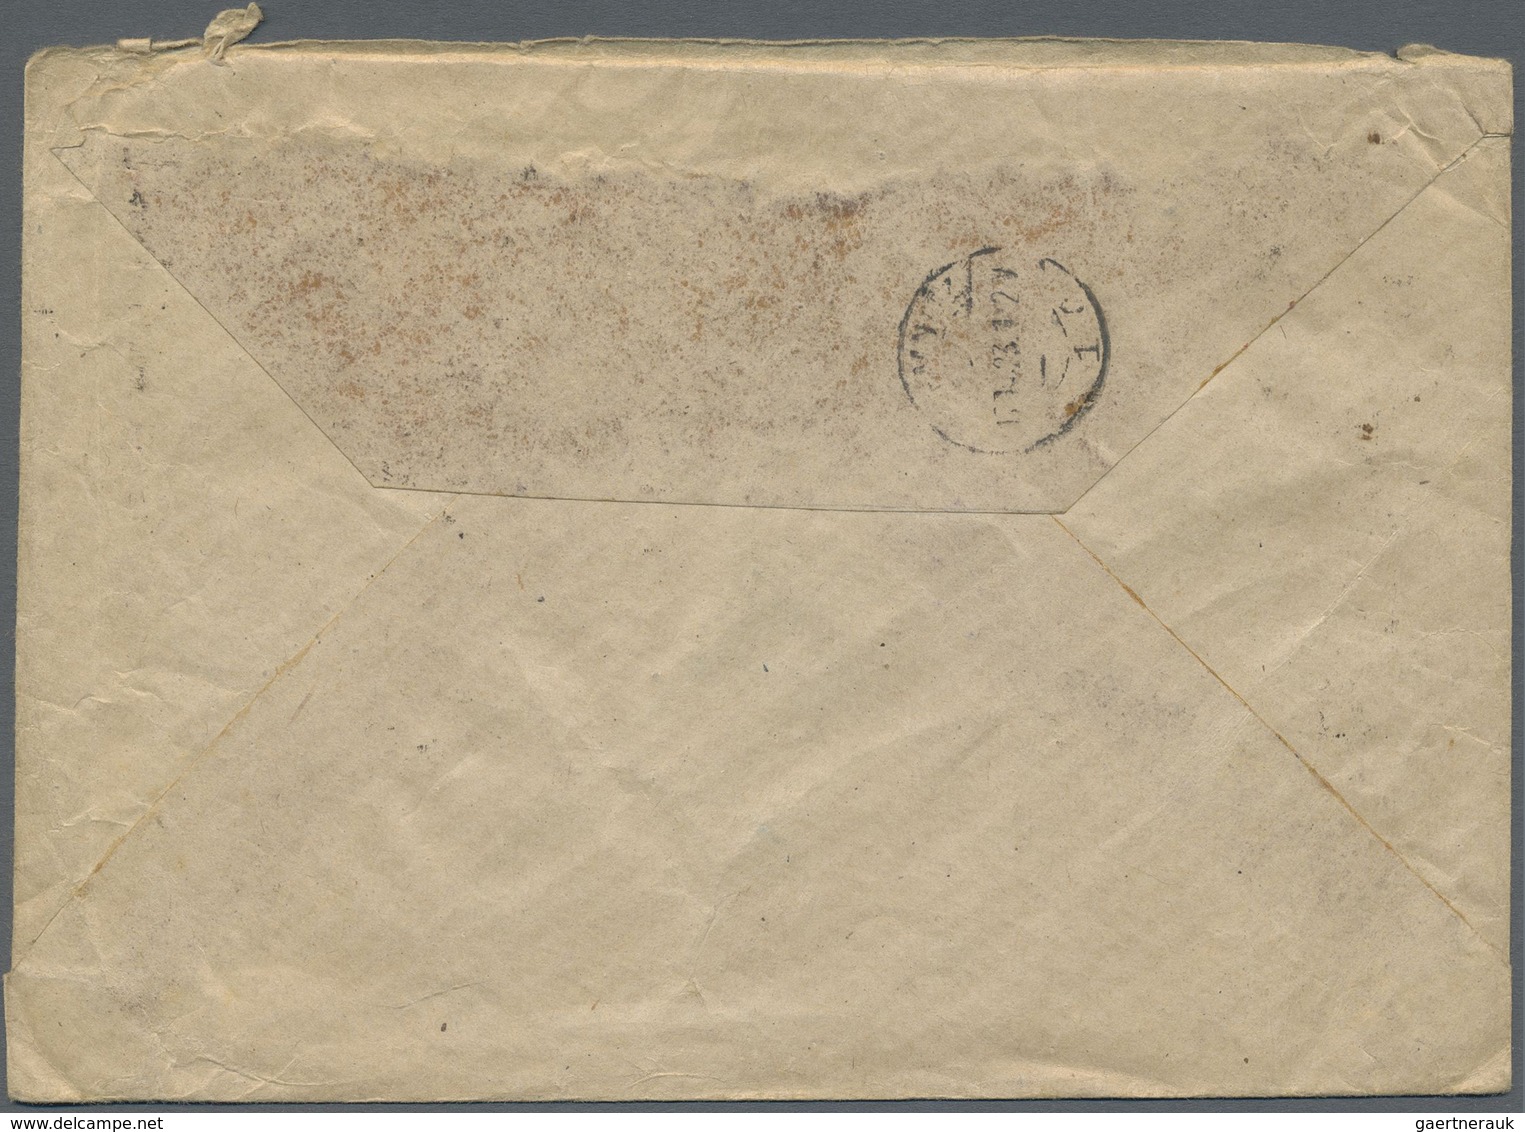 Br Danzig: 1923, "1 Million" auf 10.000 M zwei Werte auf zwei R-Briefen mit jeweils Zusatzfrankatur gel